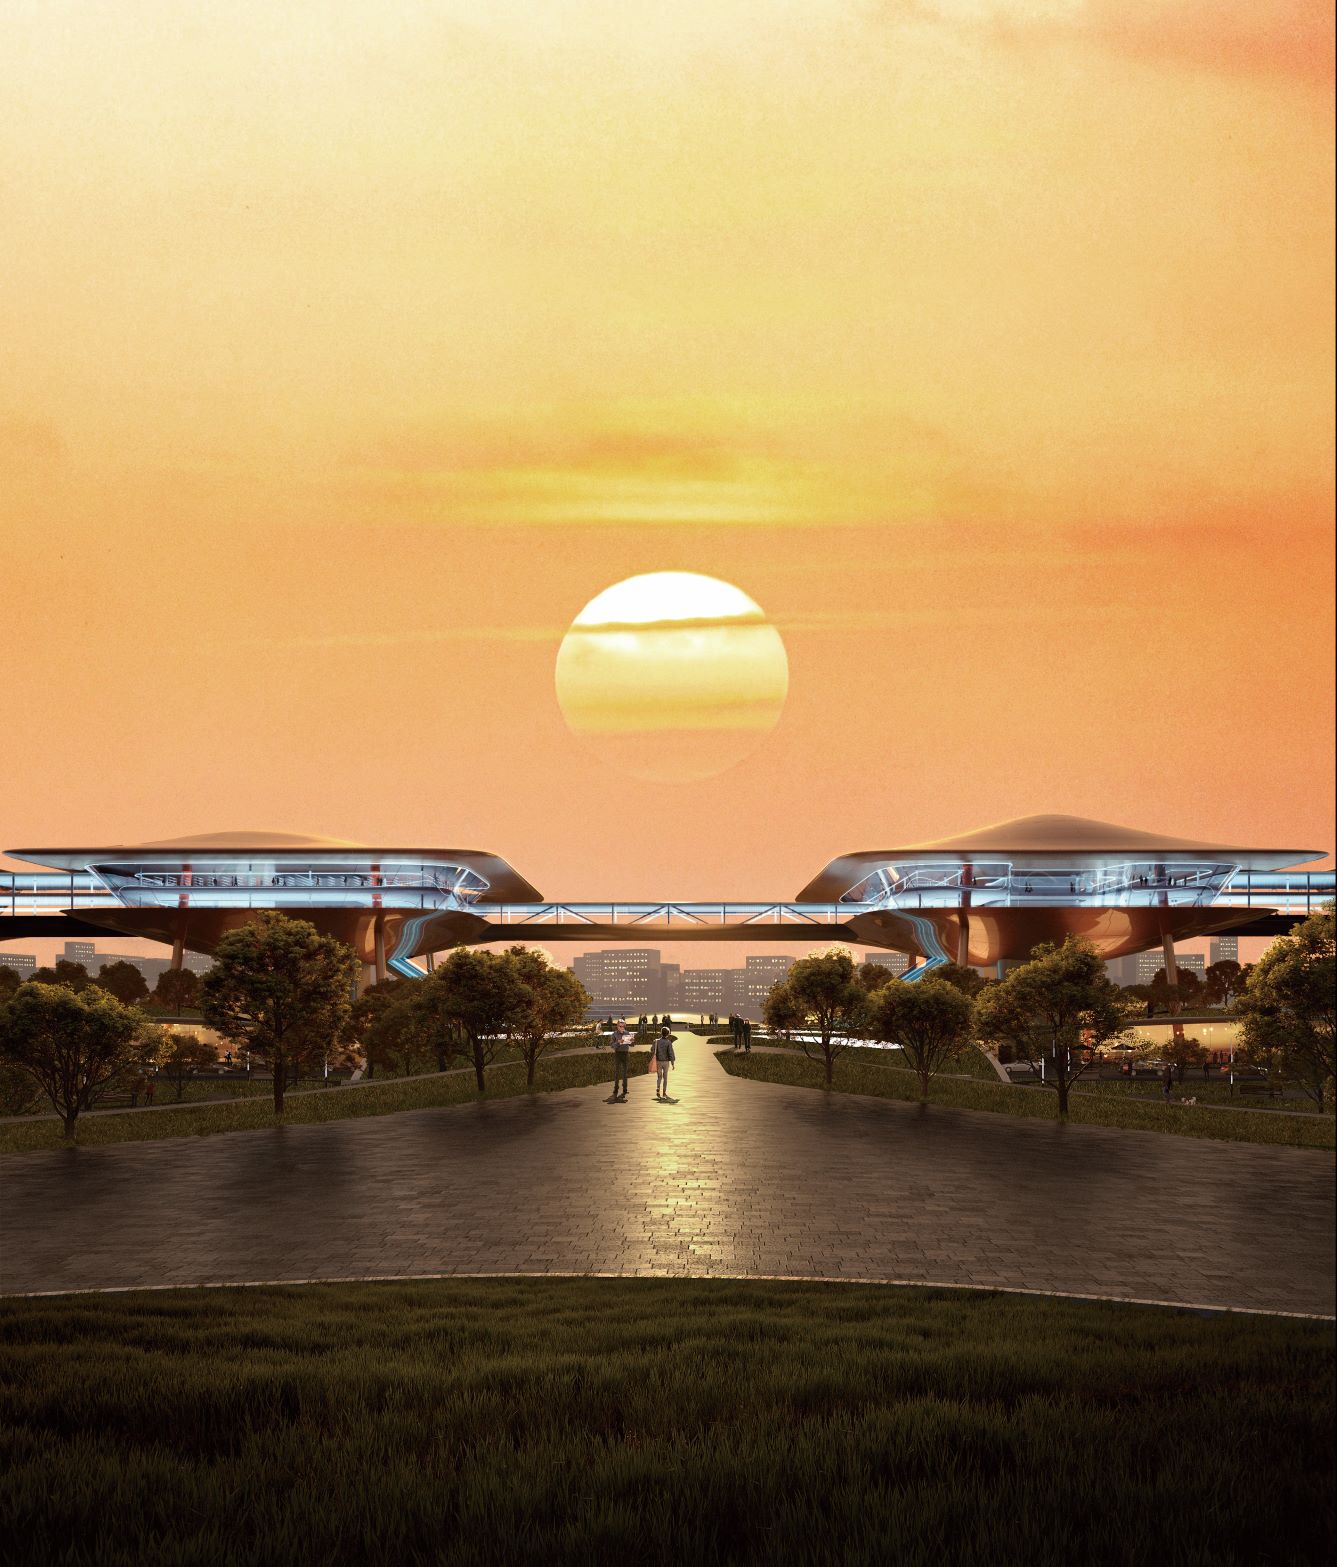 FUTURE TRANSPORTATIONC: HONGQING CUNTAN CRUISE TERMINAL 未来转运站 - 架空科幻的行走城市